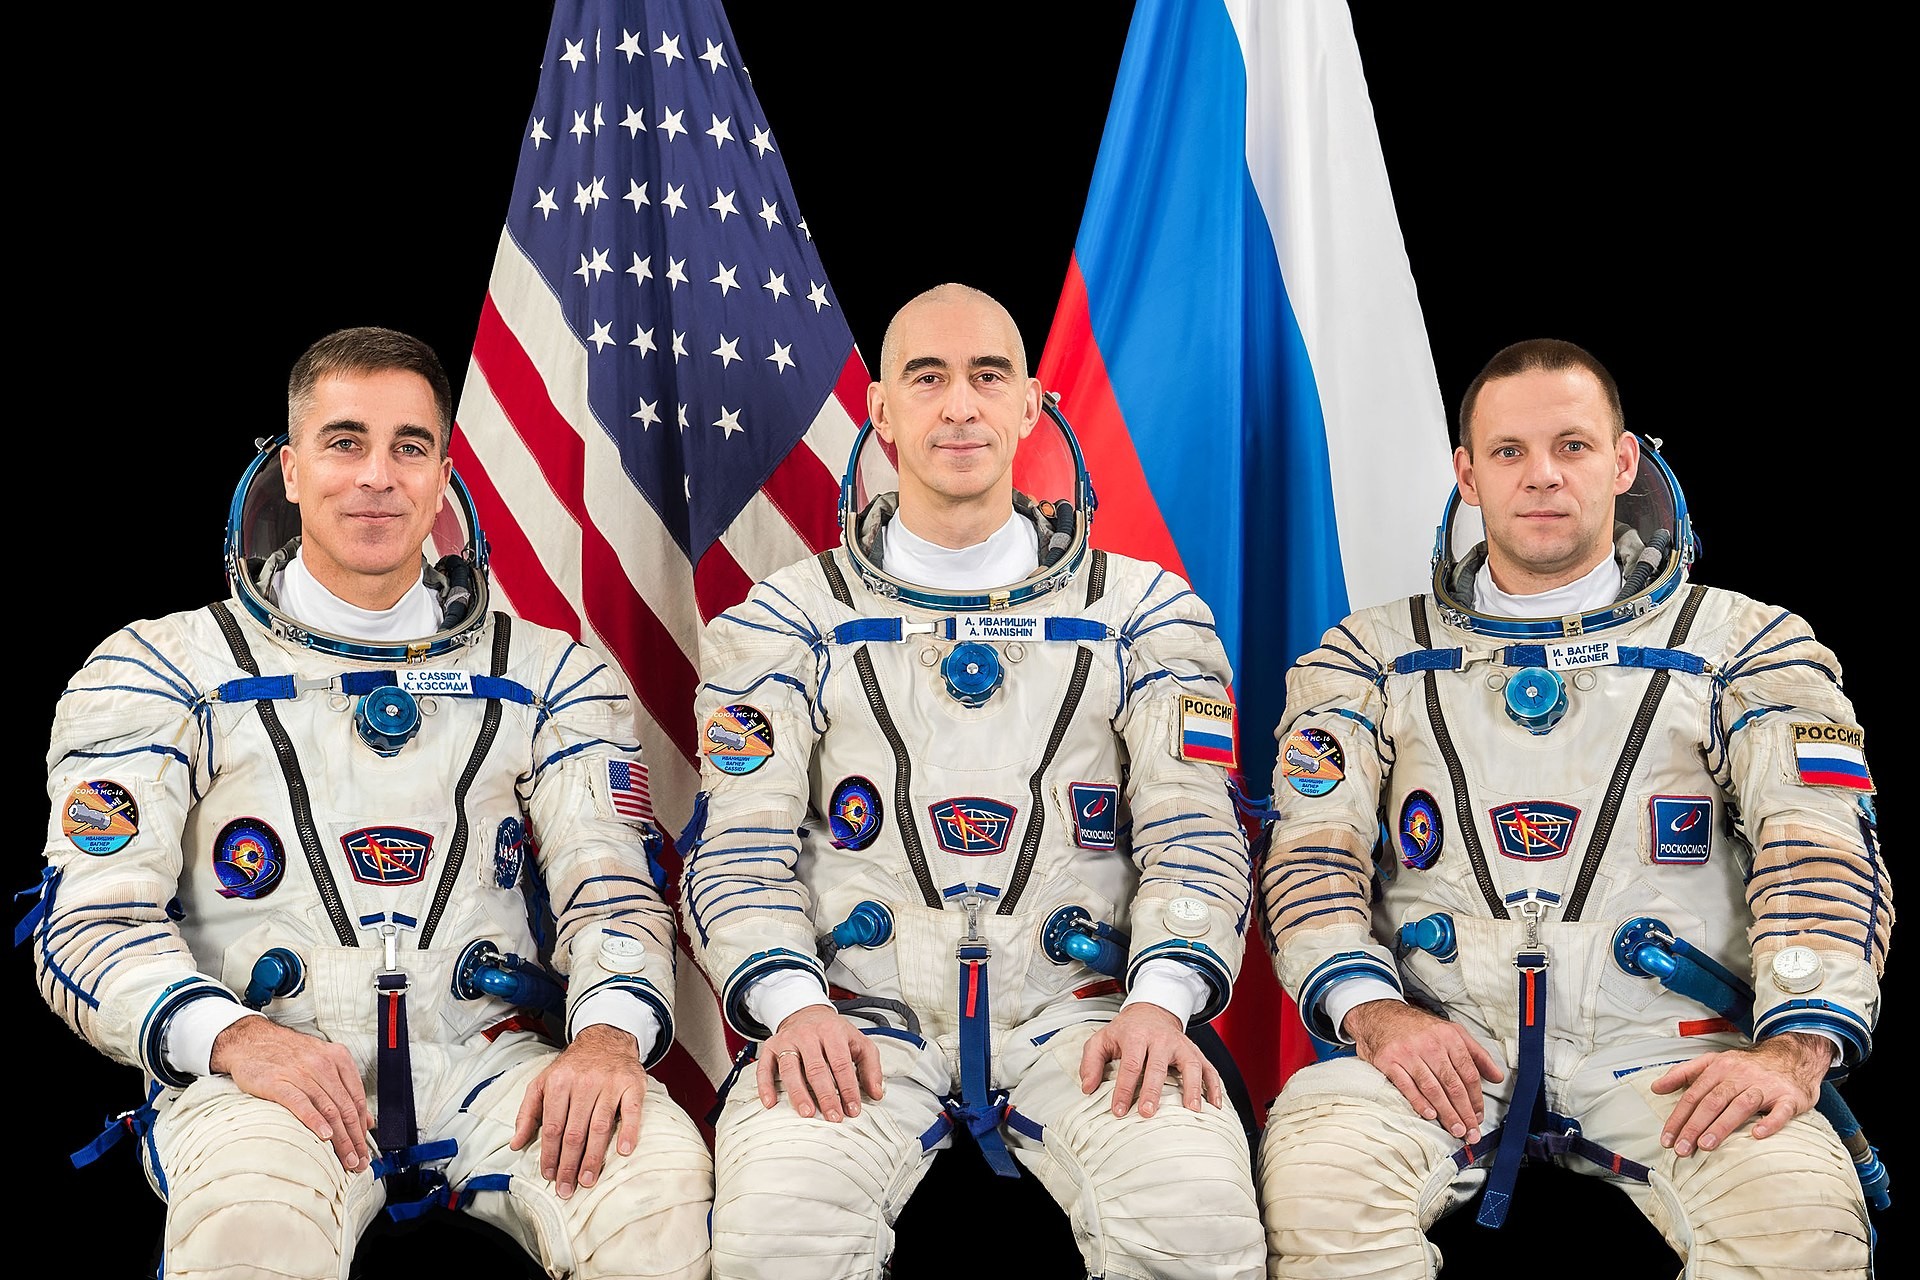 Nova posadka Mednarodne vesoljske postaje (z leve proti desni): Christopher Cassidy (NASA), Anatolij Ivanišin (Roskosmos) in Ivan Vagner (Roskosmos) med skupinskim fotografiranjem v Gagarinovem vesoljskem centru